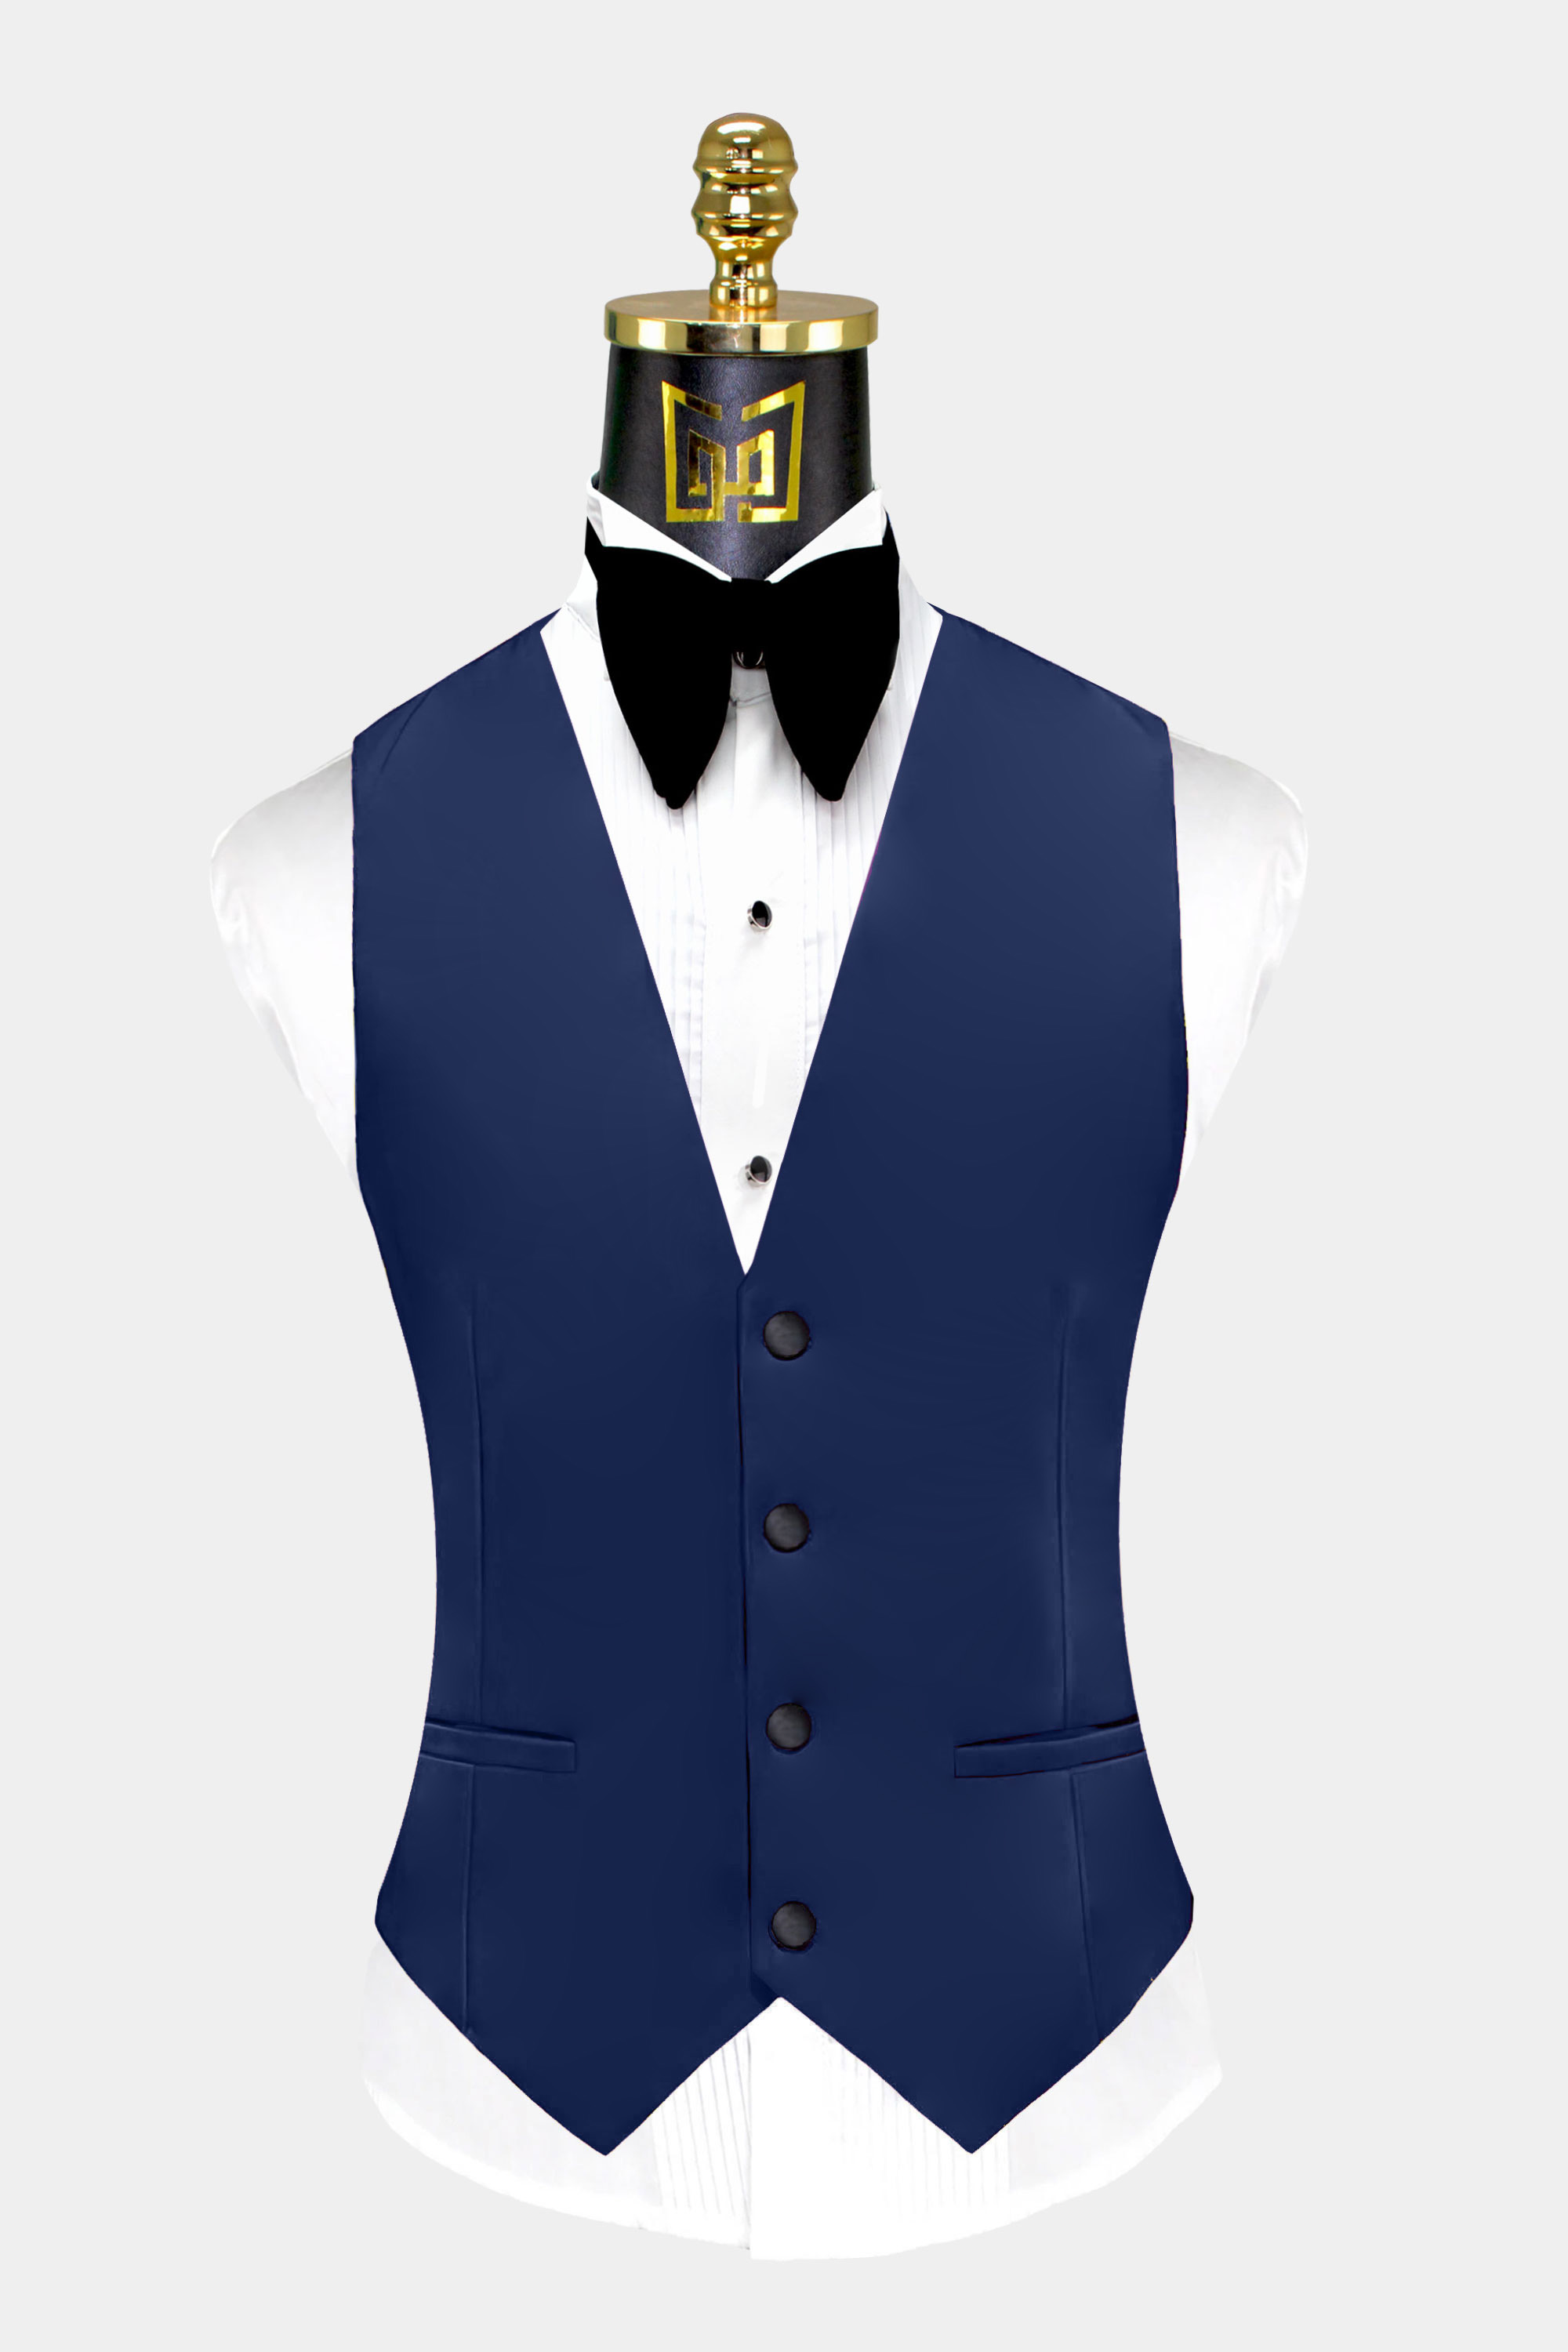 Mens-Navy-Blue-Tuxedo-Vest-Groom-Wedding-Suit-Waistcoat-from-Gentlemansguru.com